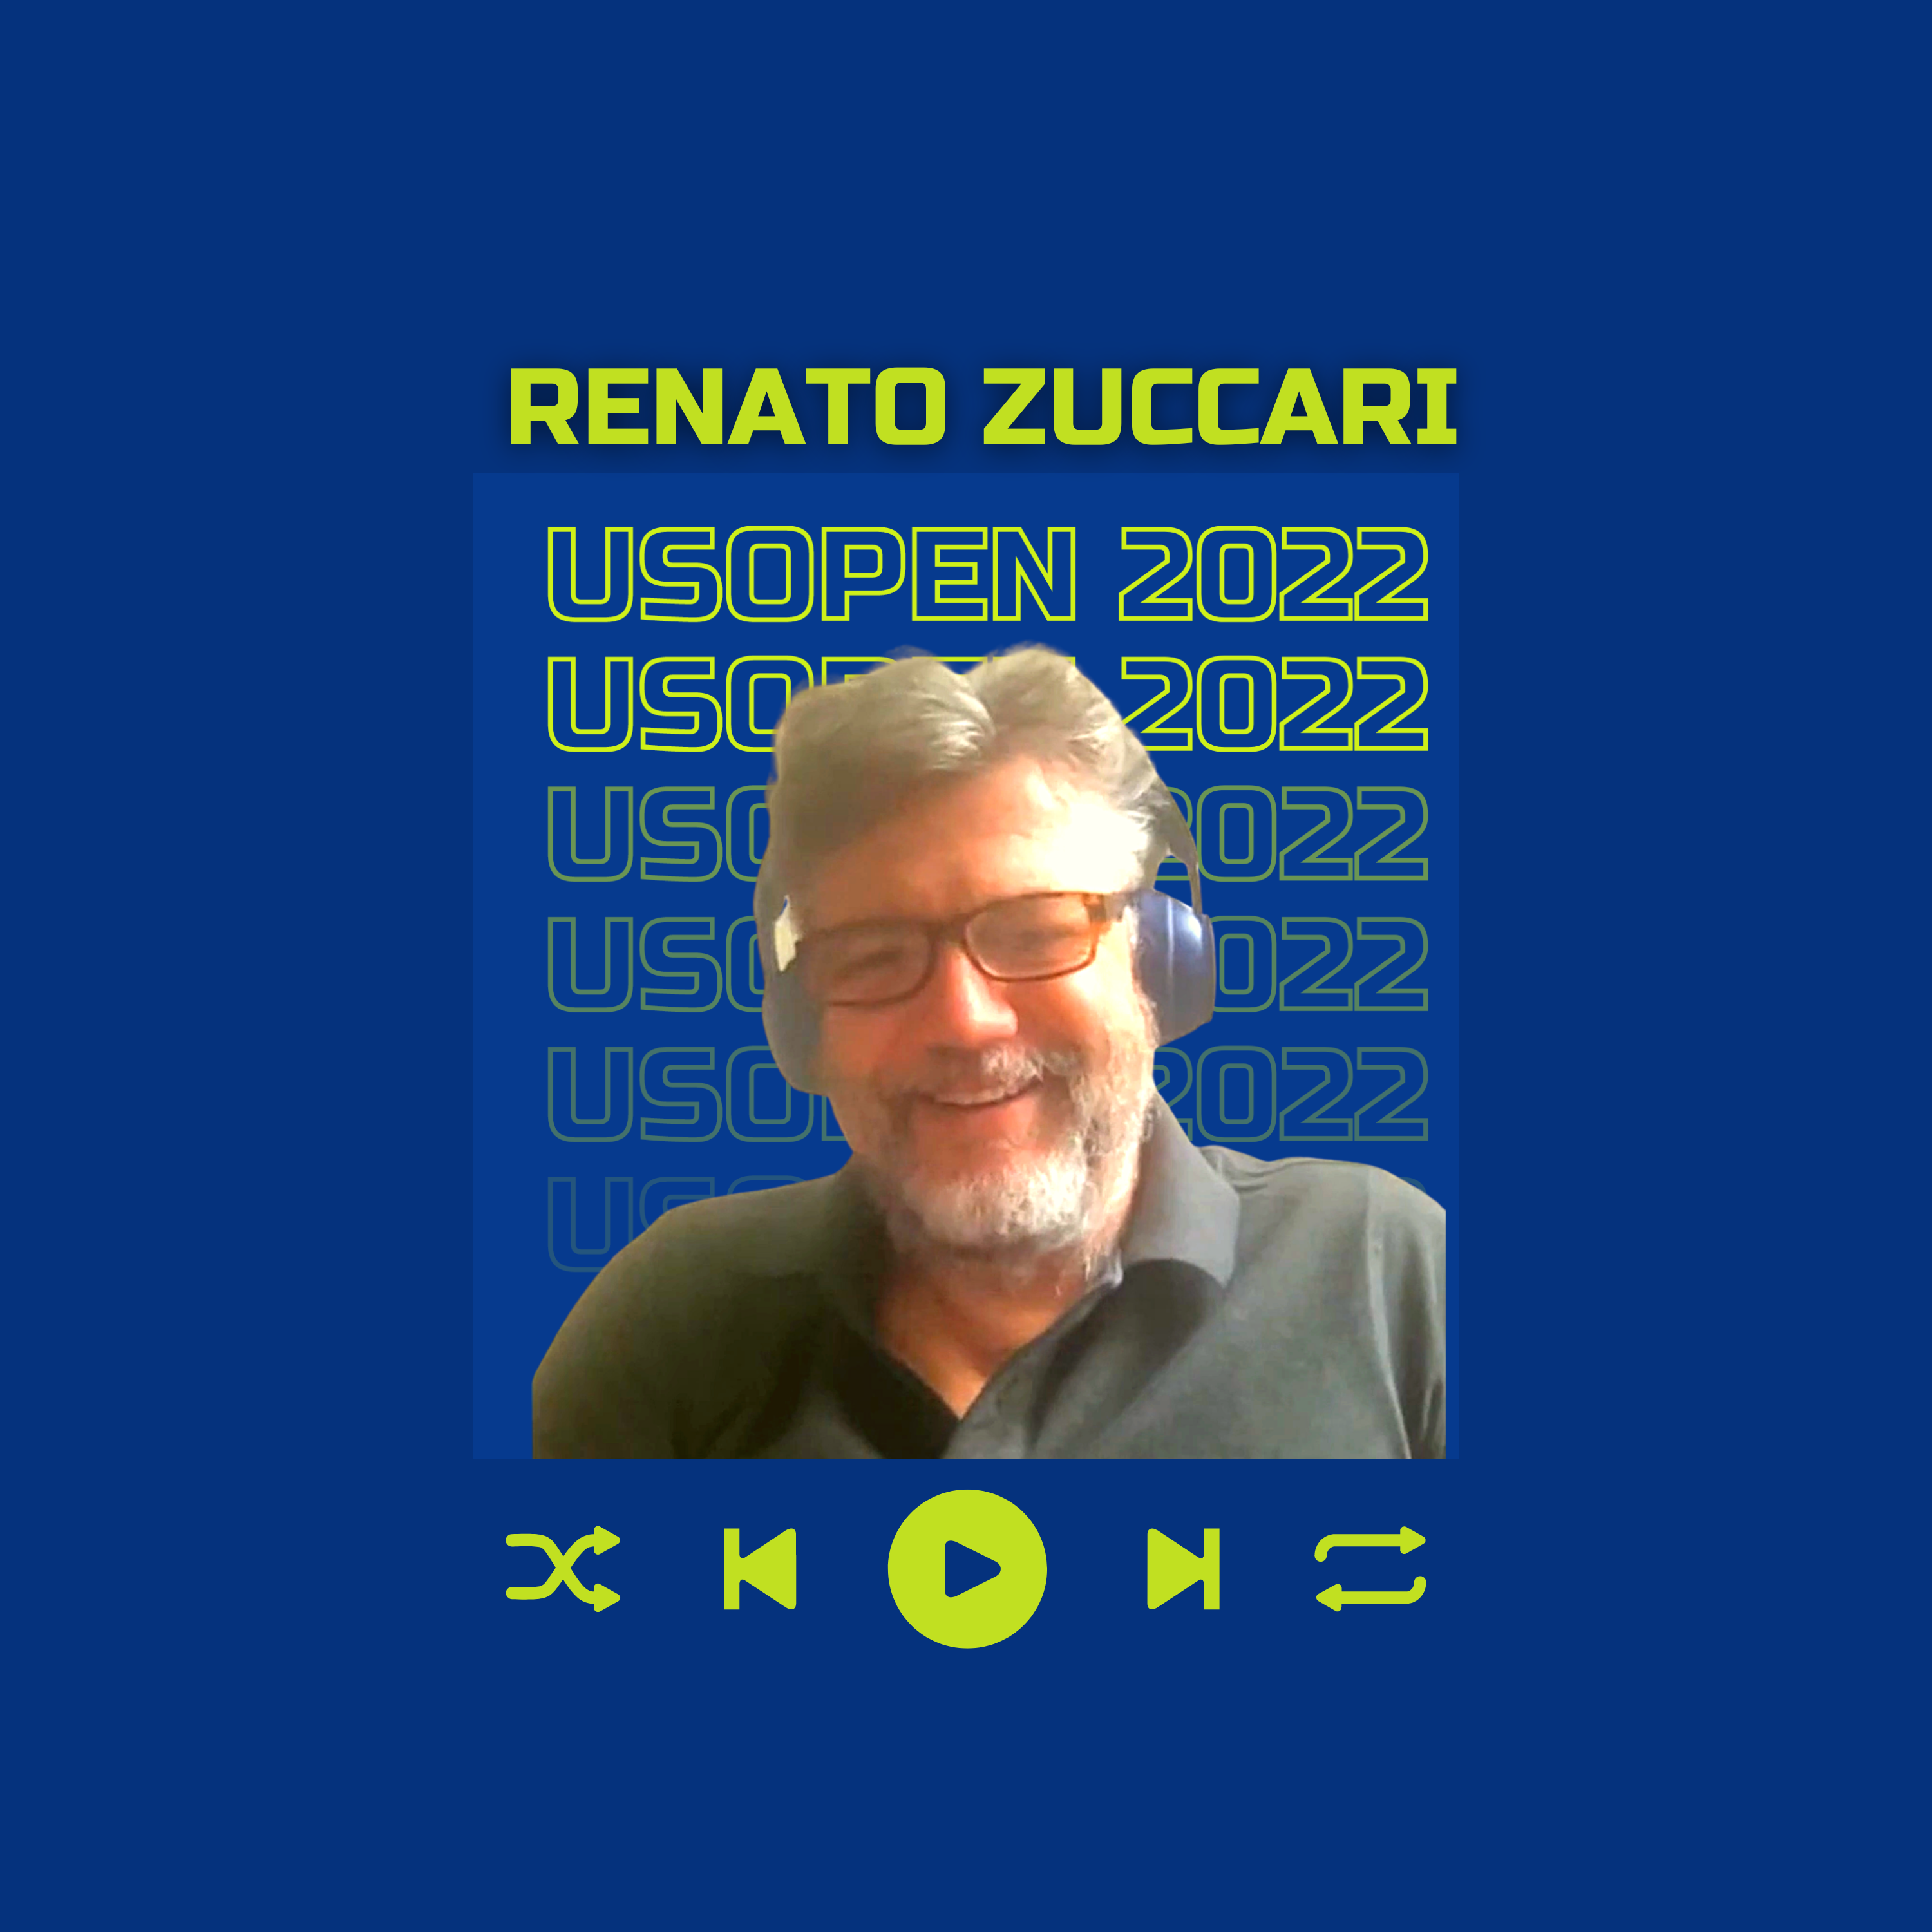 Renato Zuccari